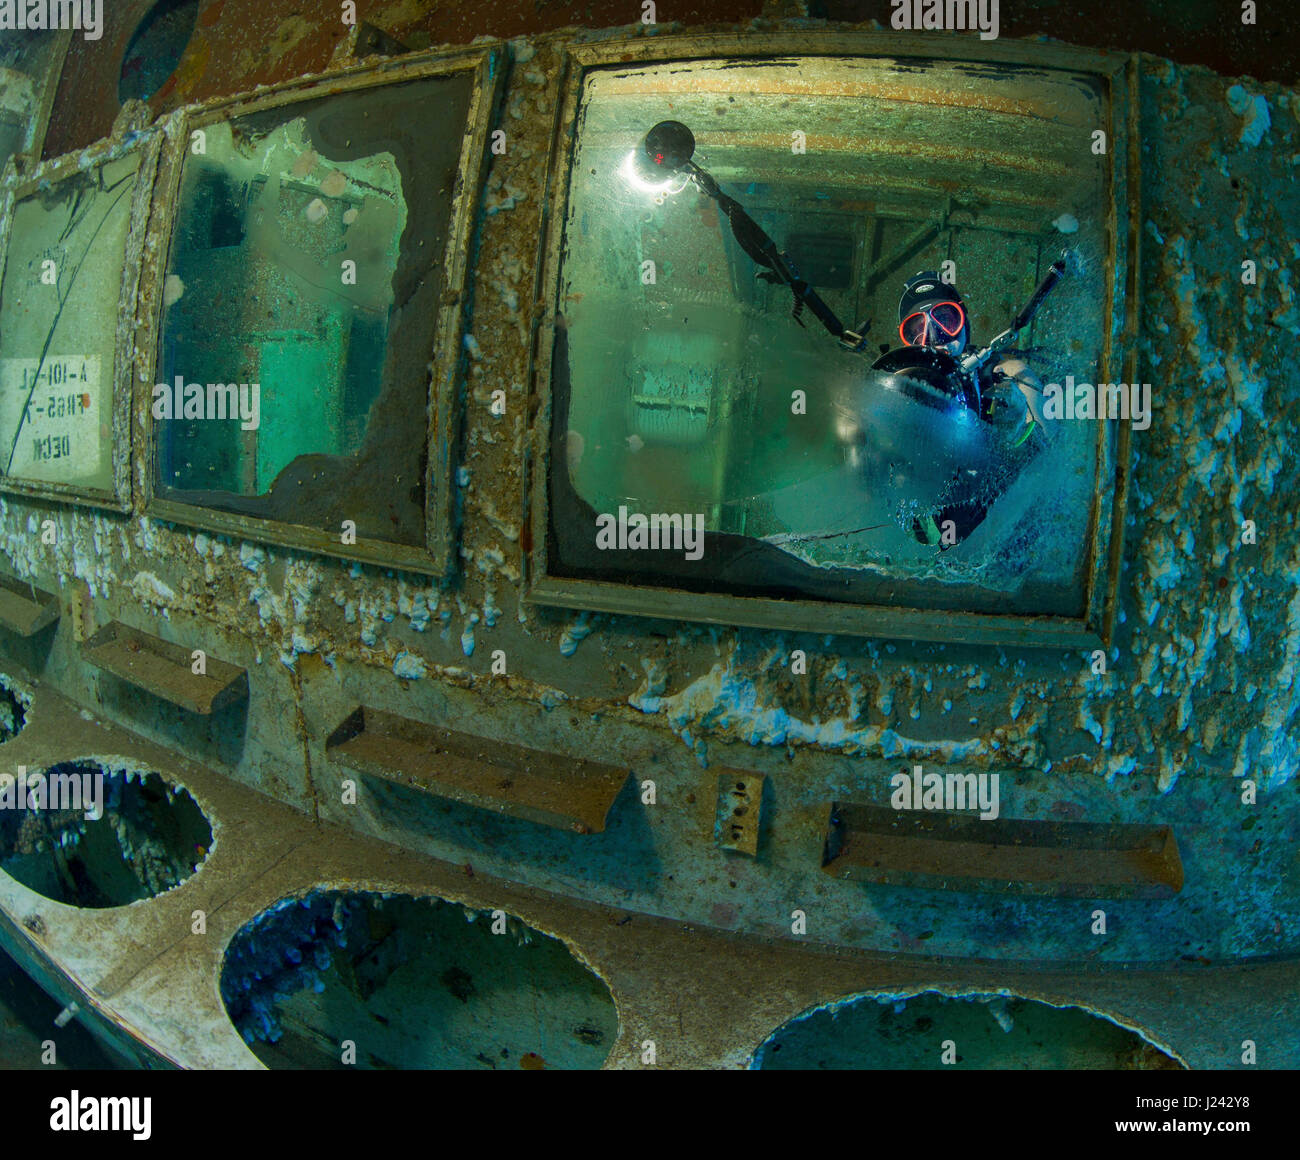 Fotografo subacqueo cattura Self-portrait tramite reflection Foto Stock